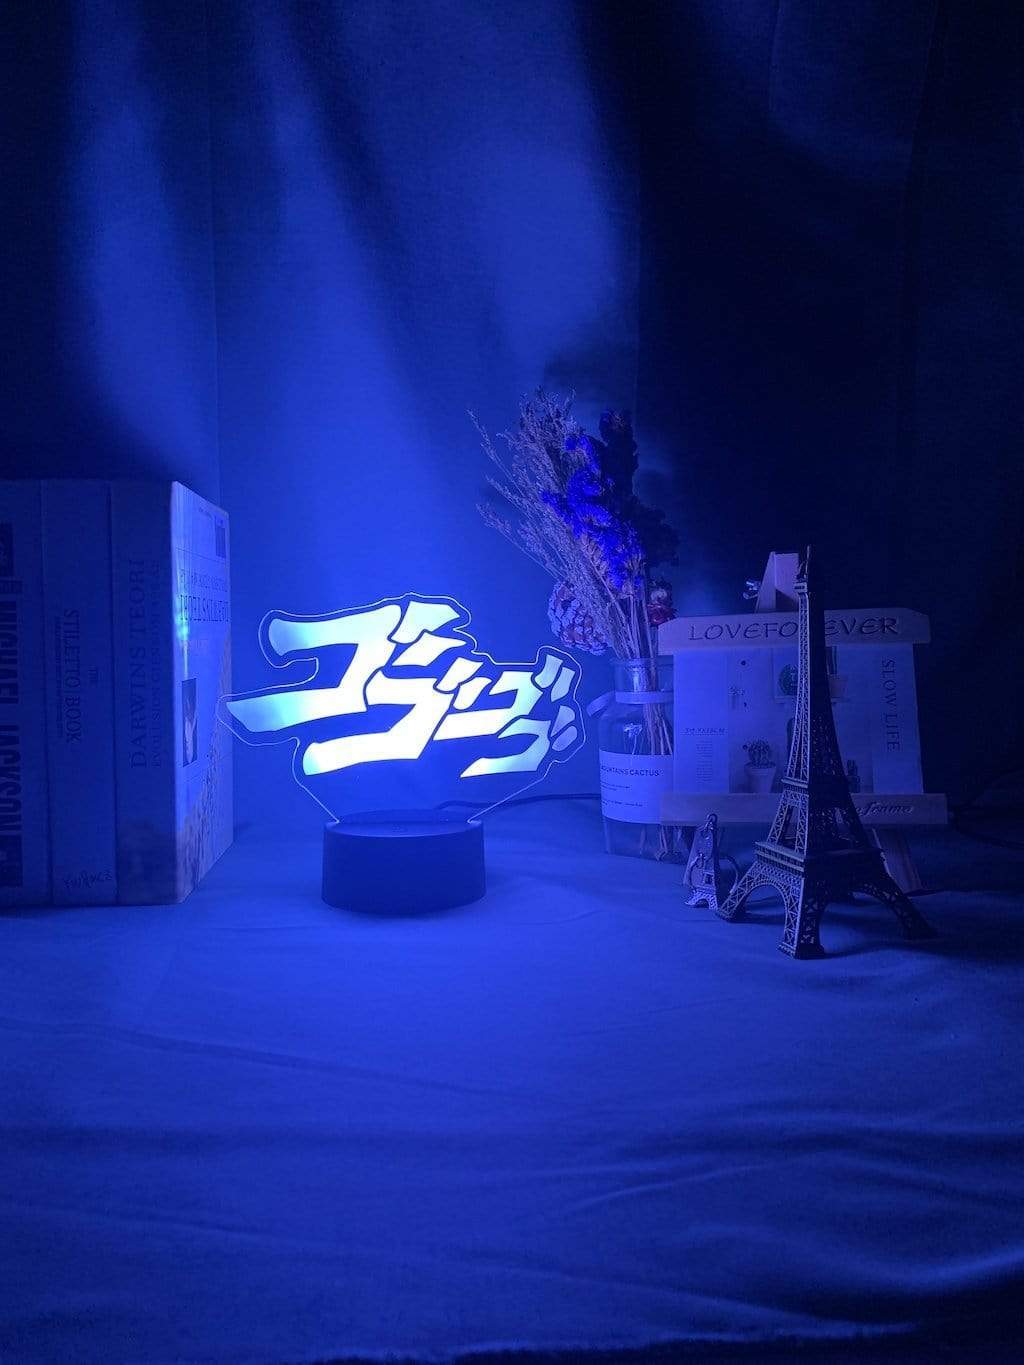 Lampe JoJo's Bizarre Adventure Letter  Lampe led 3D Décor